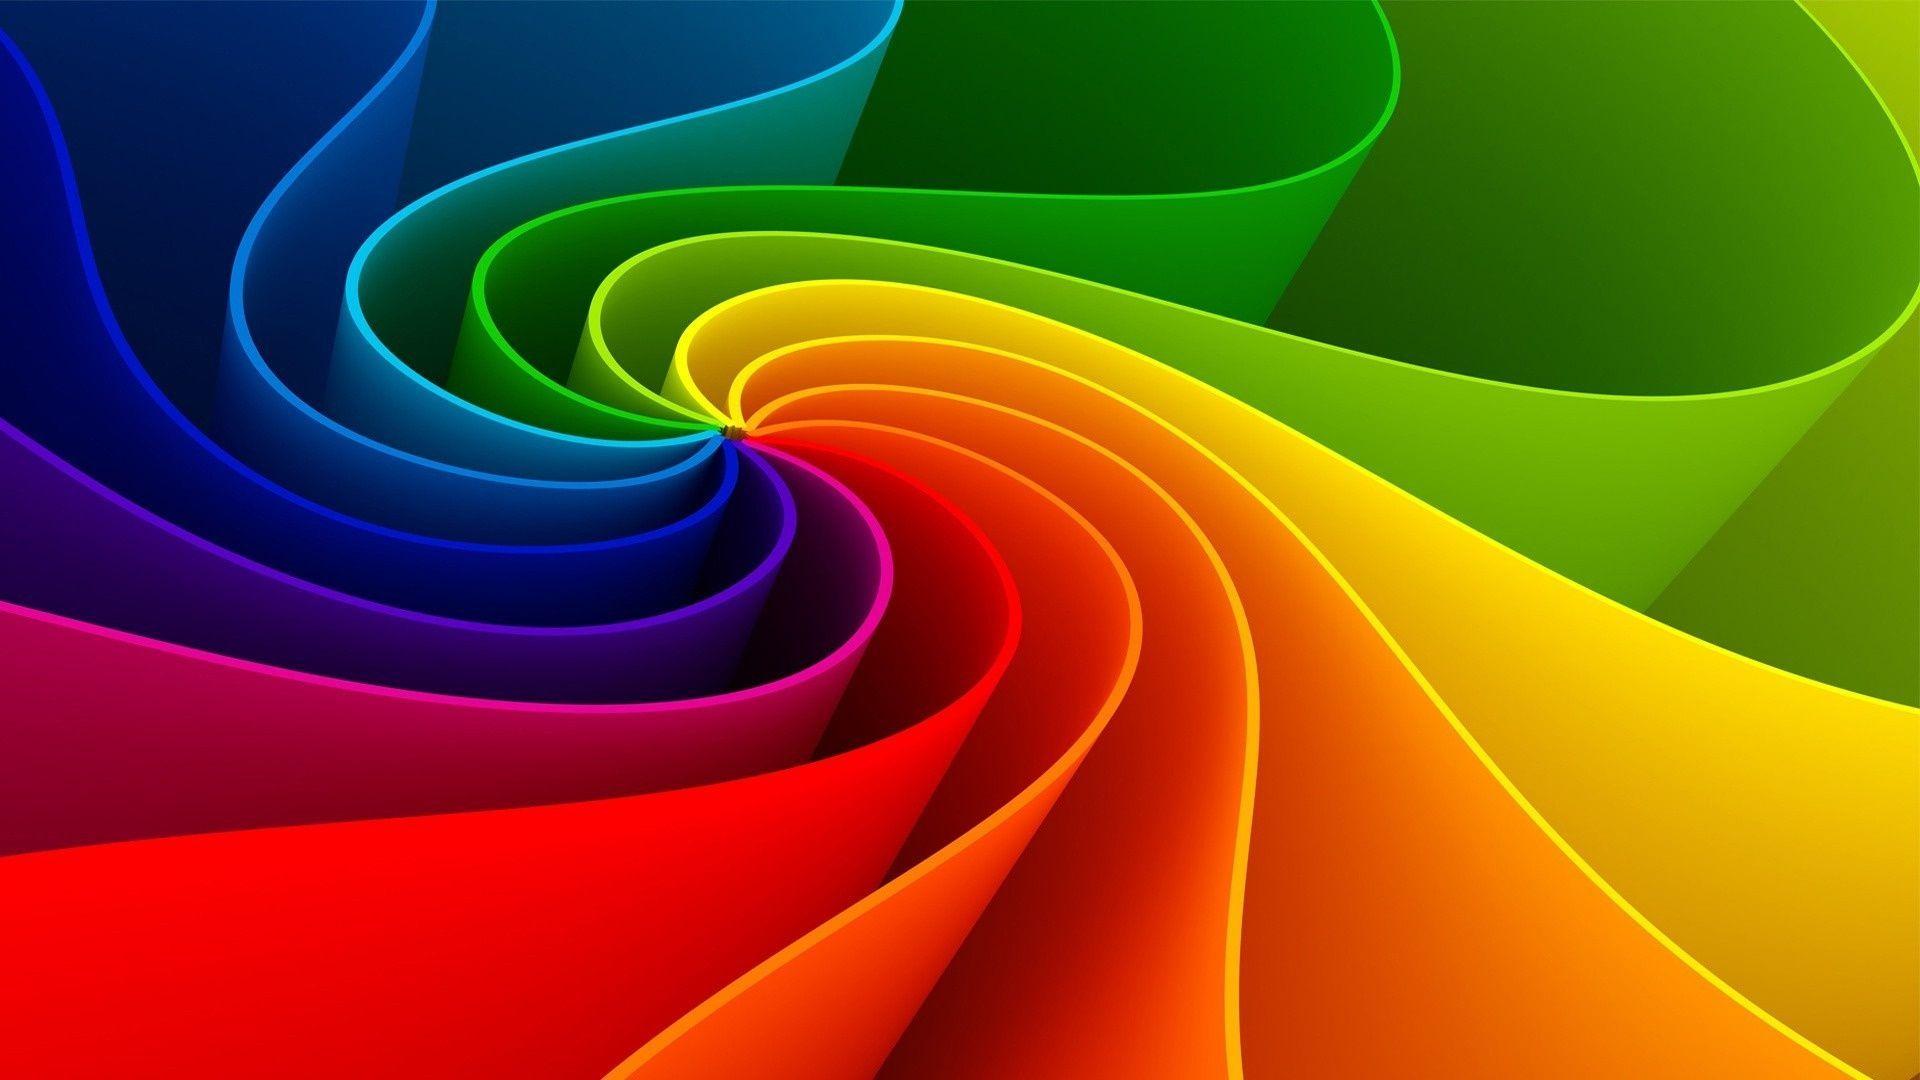 Rainbow Flower Abstract Wallpaper. High Definition Wallpaper